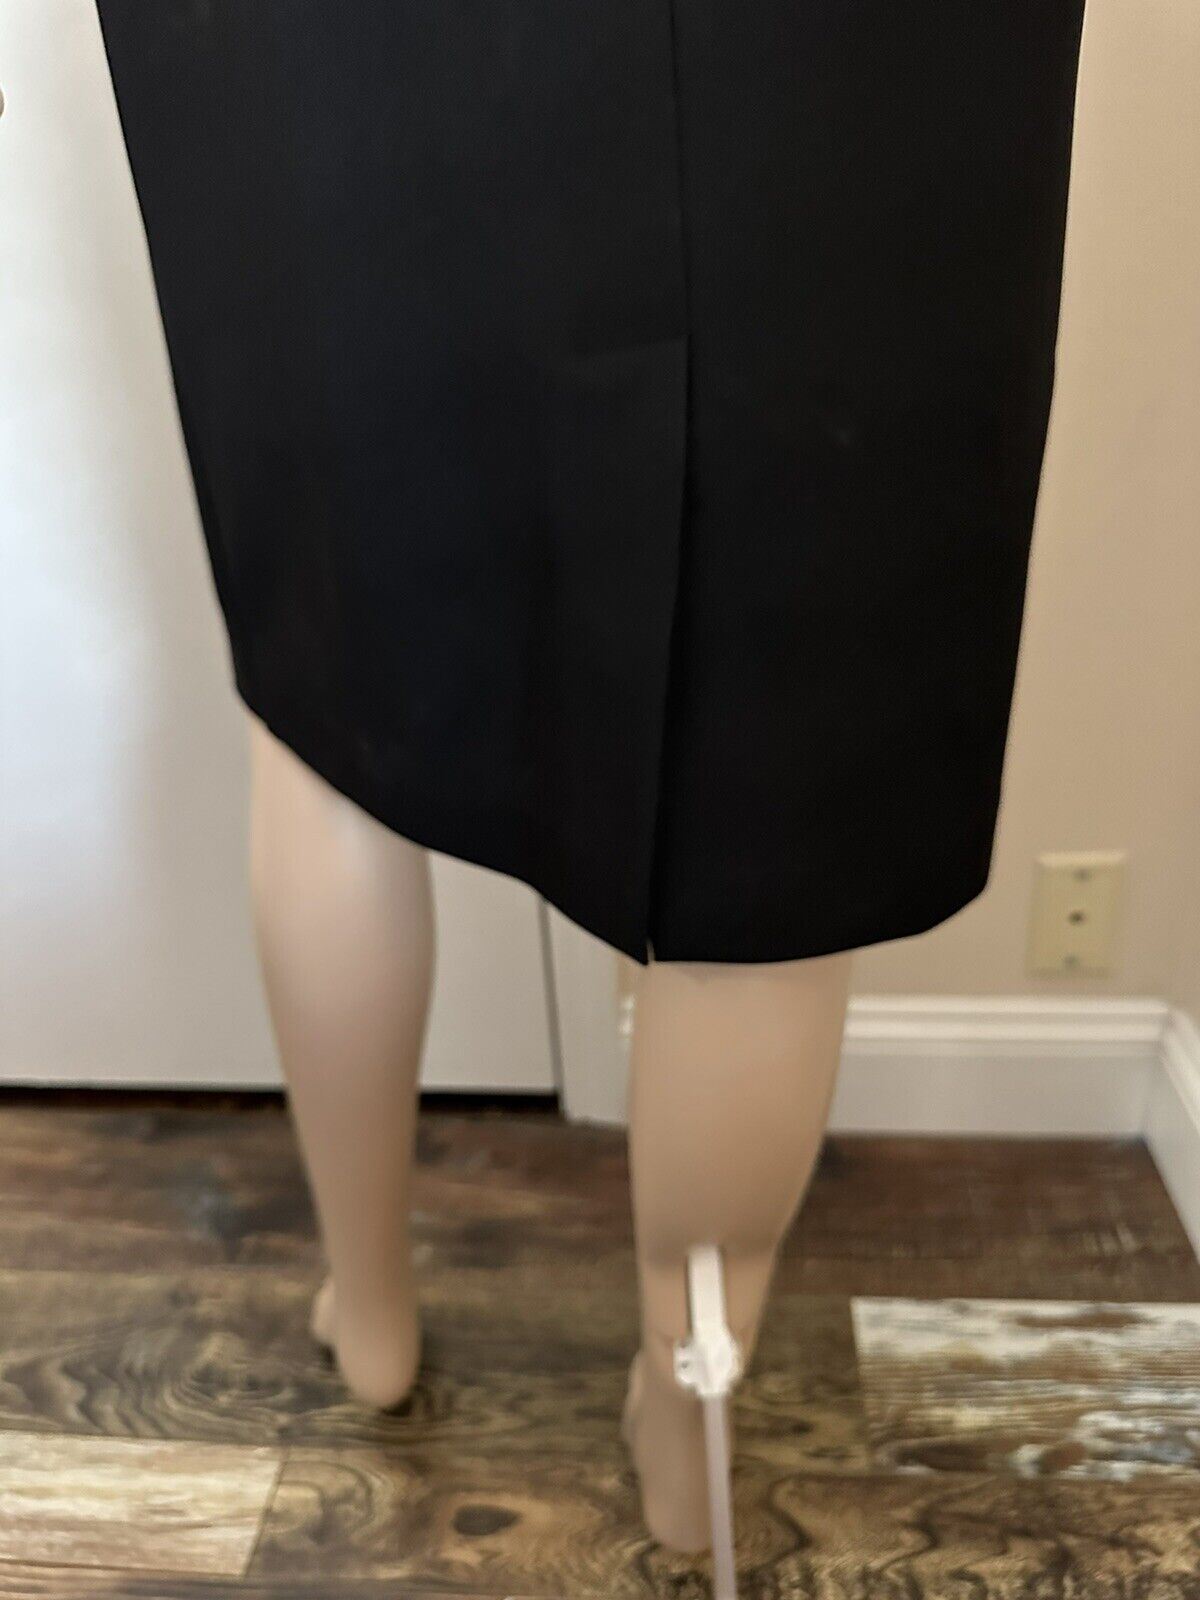 New $2200 Gucci Woman Midi Dress Black Size S